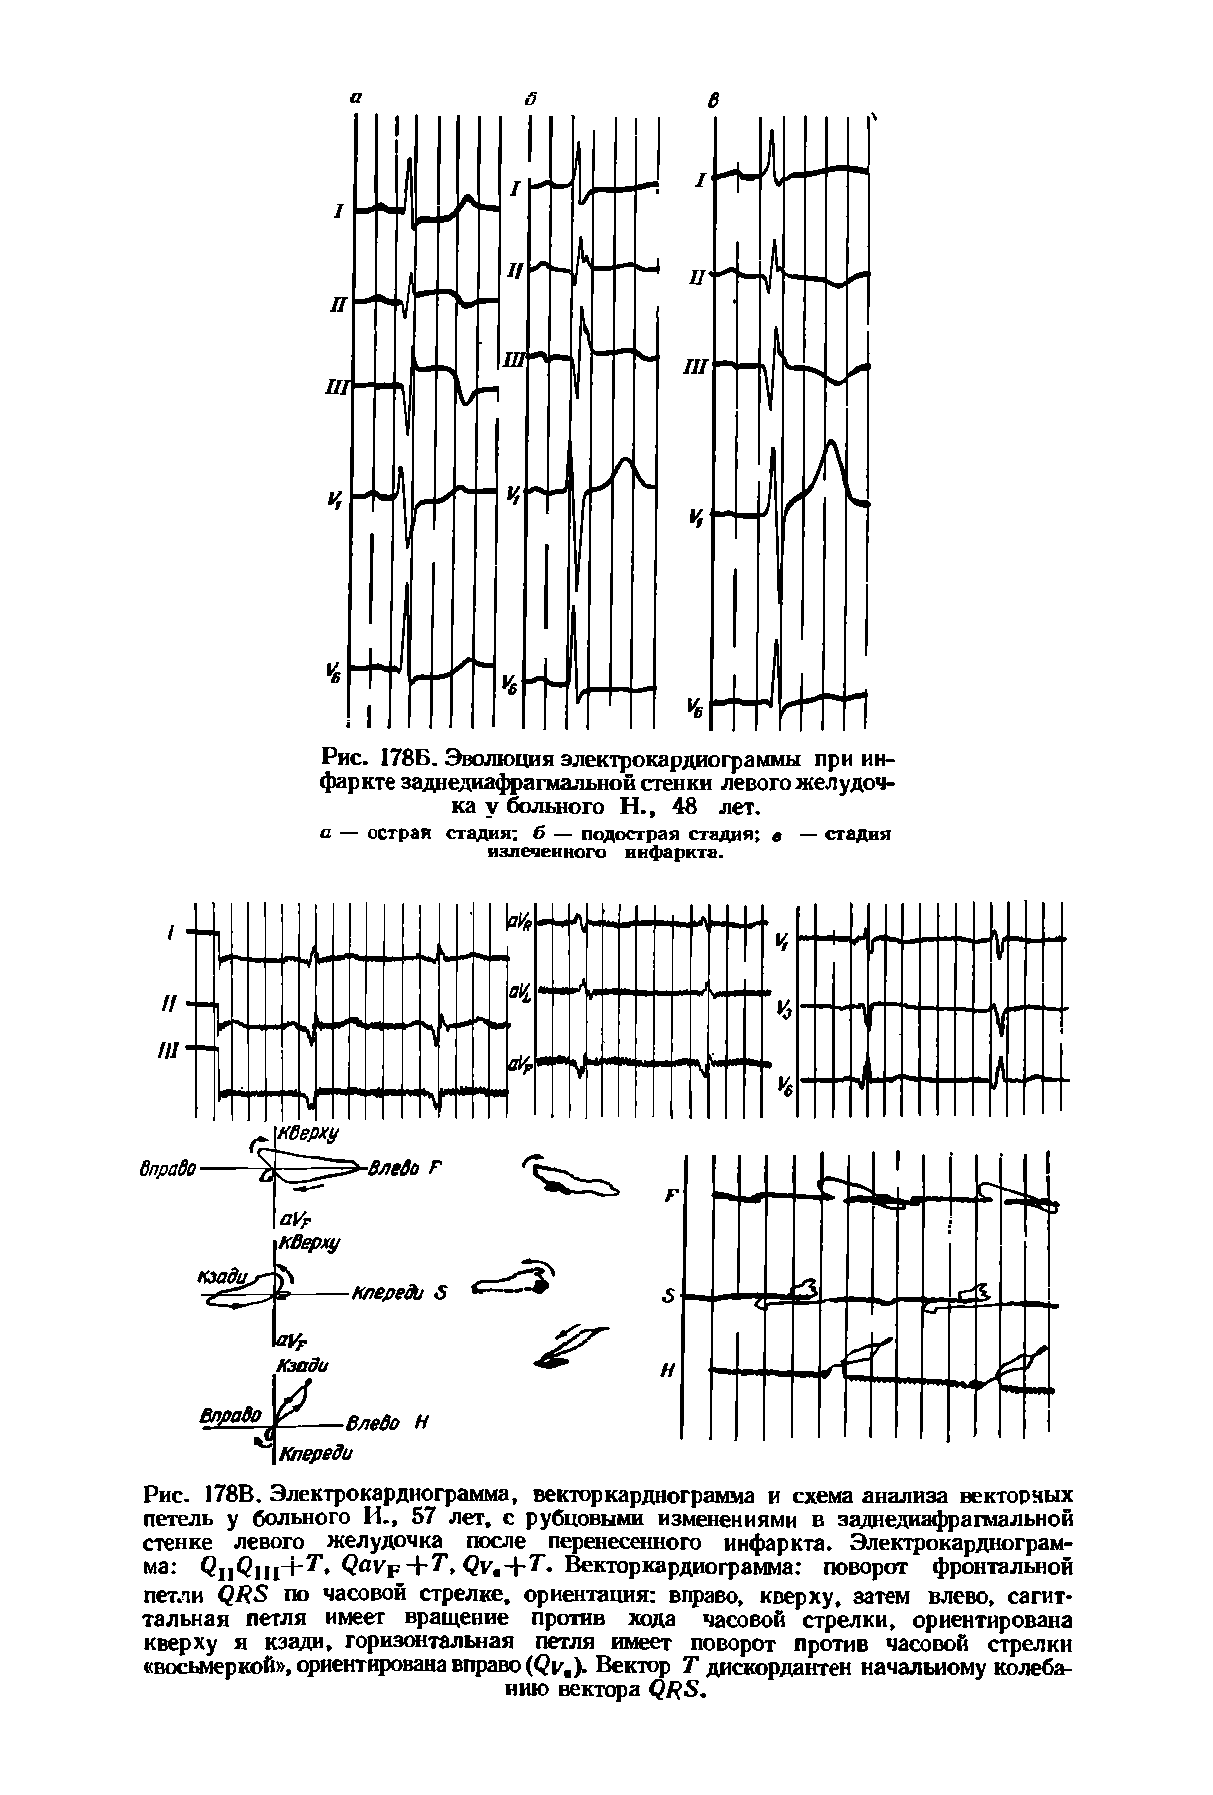 Рис. 178В. Электрокардиограмма, векторкарднограмма и схема анализа векторных петель у больного И., 57 лет, с рубцовыми изменениями в заднедиафрагмальной стенке левого желудочка после перенесенного инфаркта. Электрокардиограмма QI1QJ I+7, Q F 4-7, Векторкарднограмма поворот фронтальной...